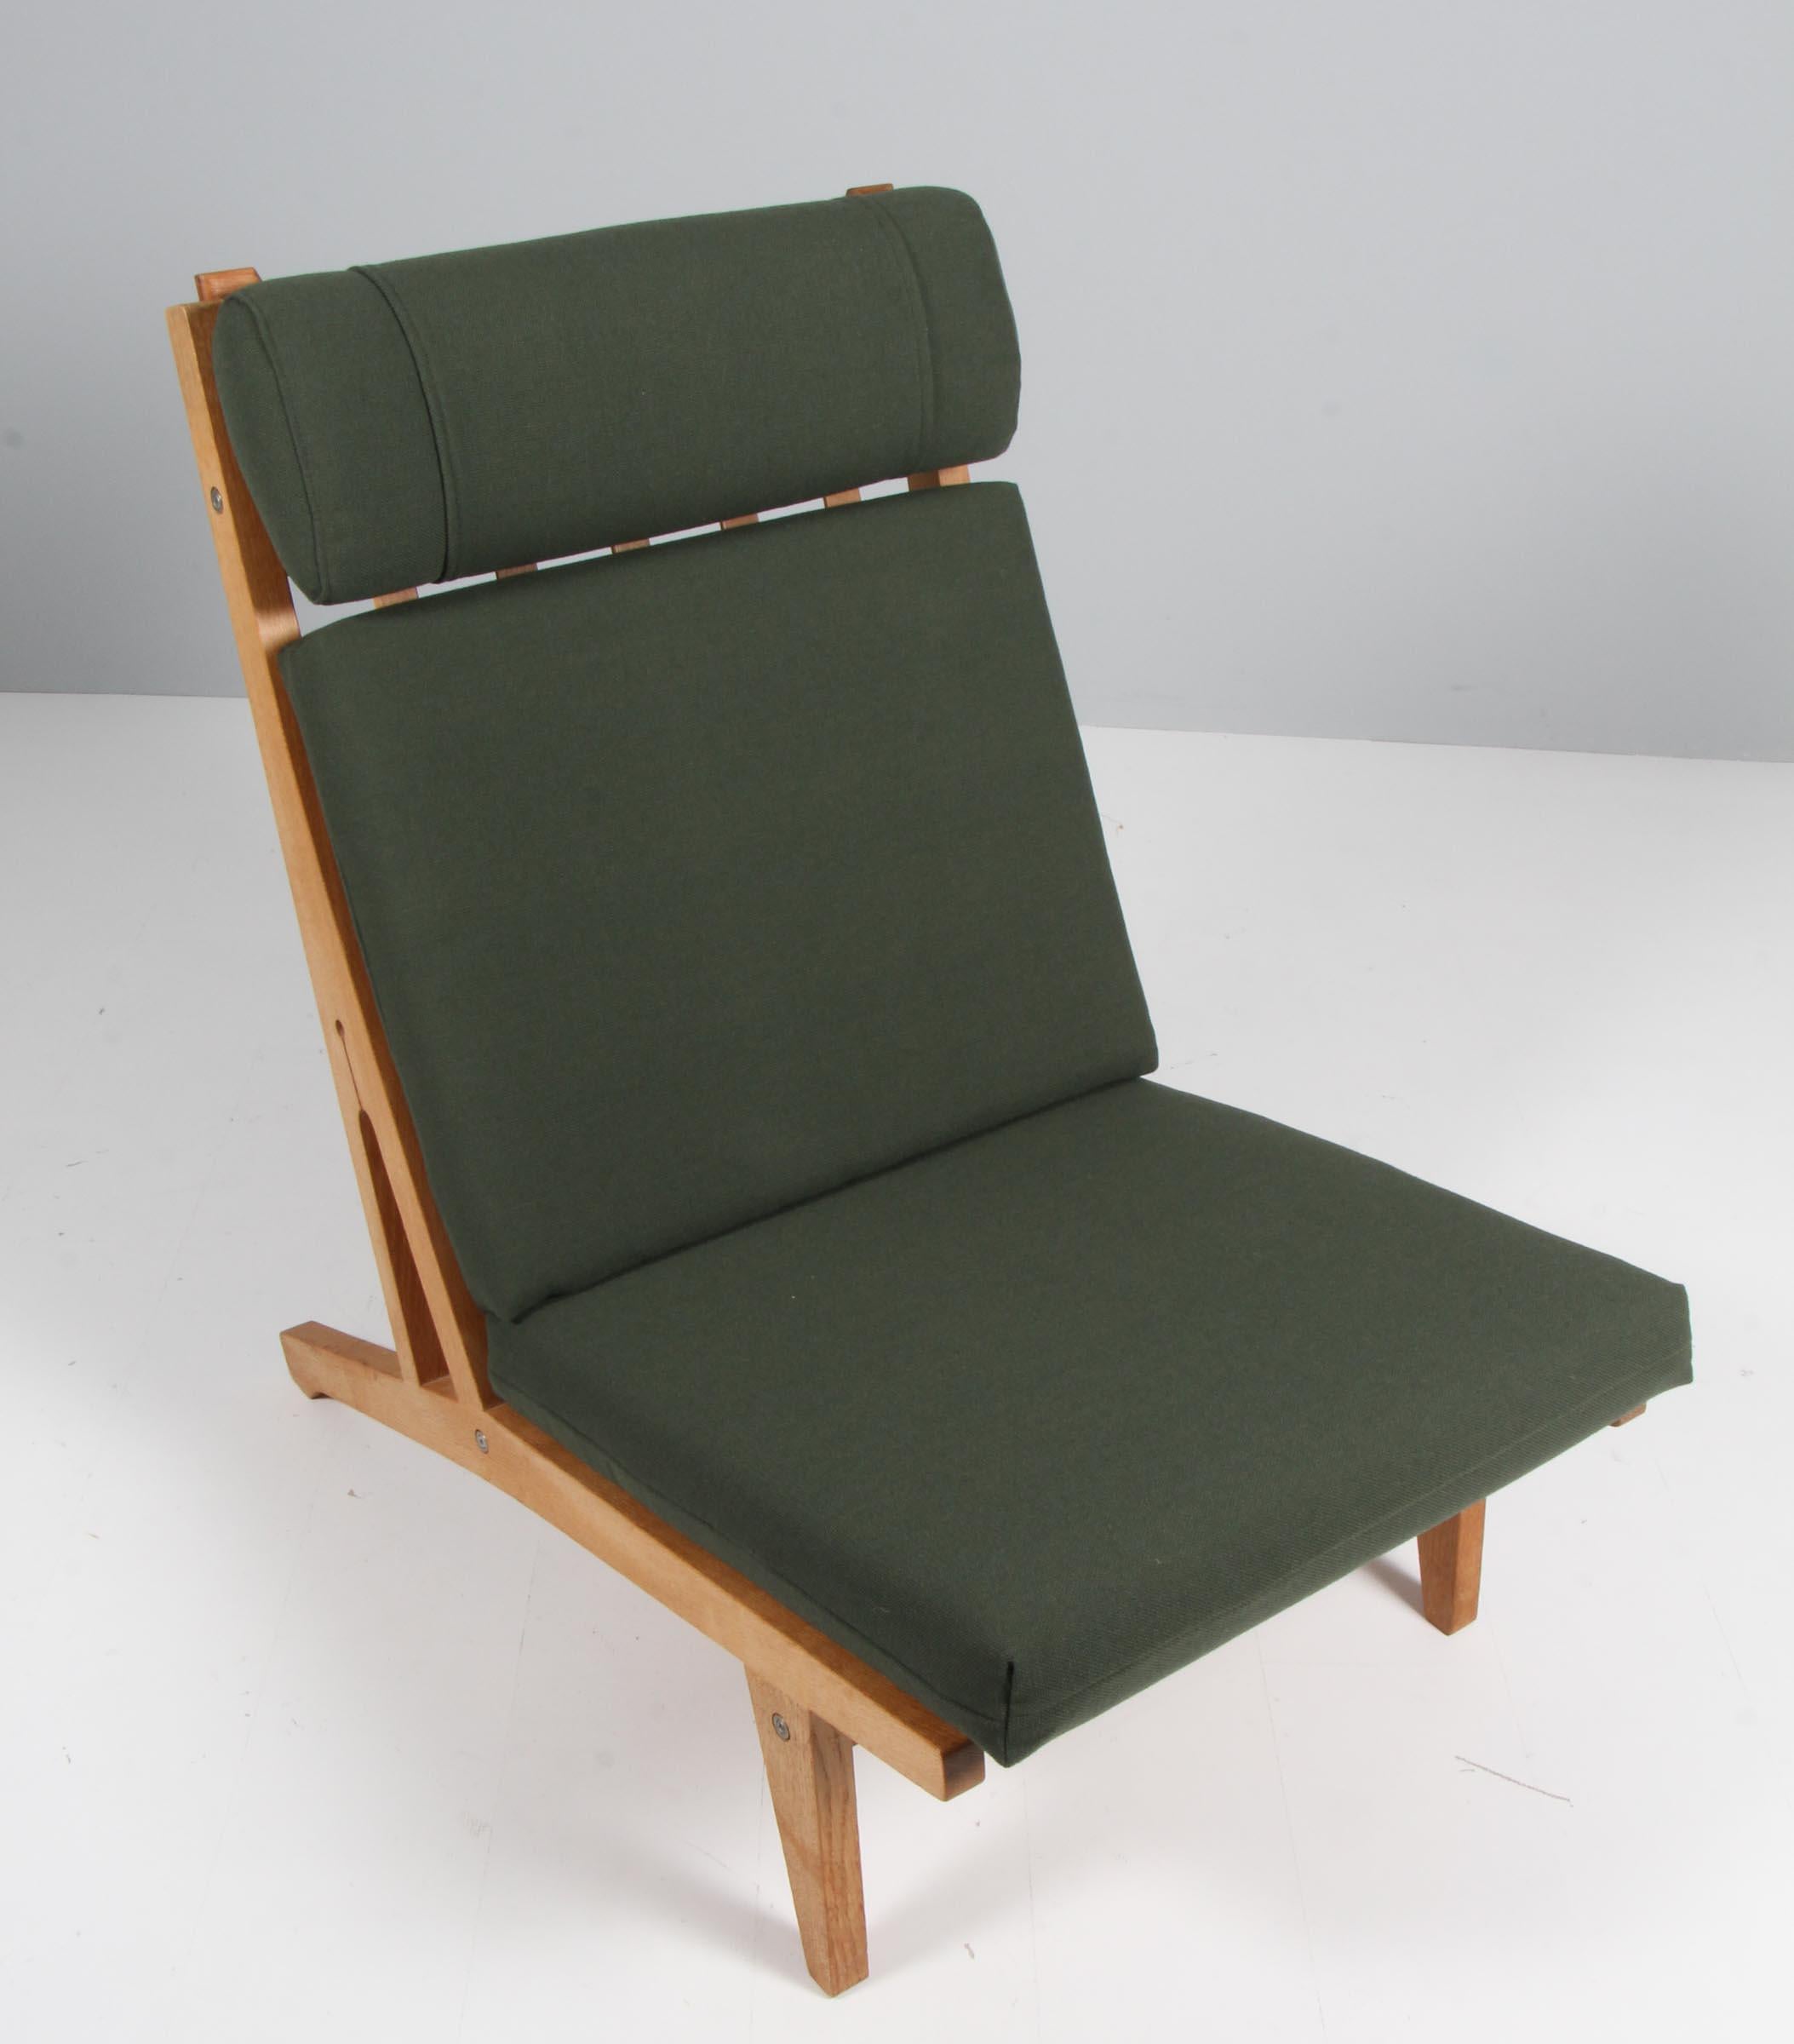 Scandinavian Modern Hans J. Wegner Lounge Chair with ottoman, Model GE-375